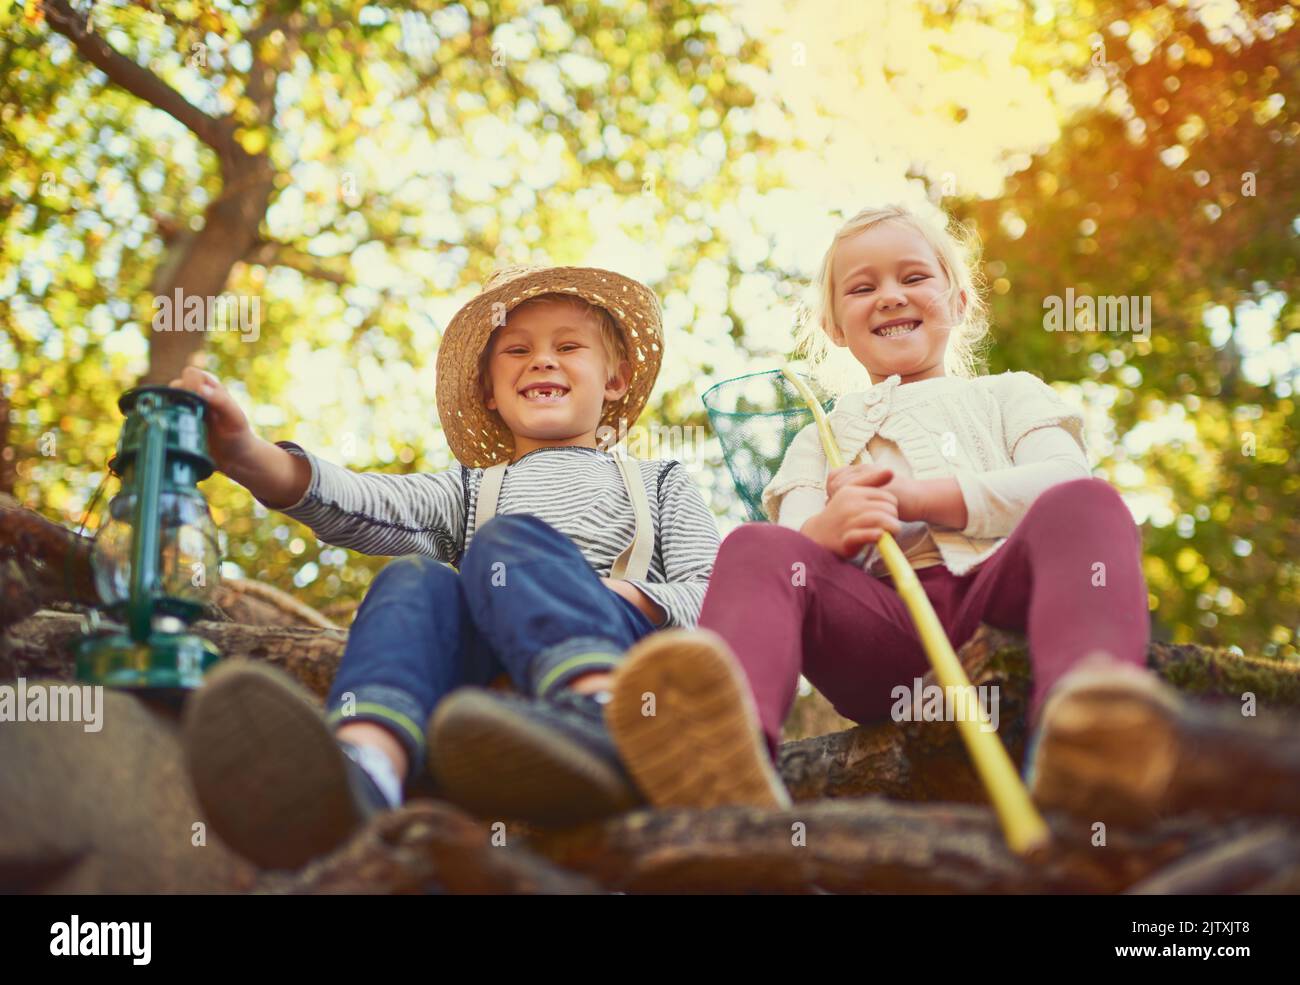 Gemeinsam ein Abenteuer erleben. Portrait von zwei kleinen Kindern, die im Freien spielen. Stockfoto